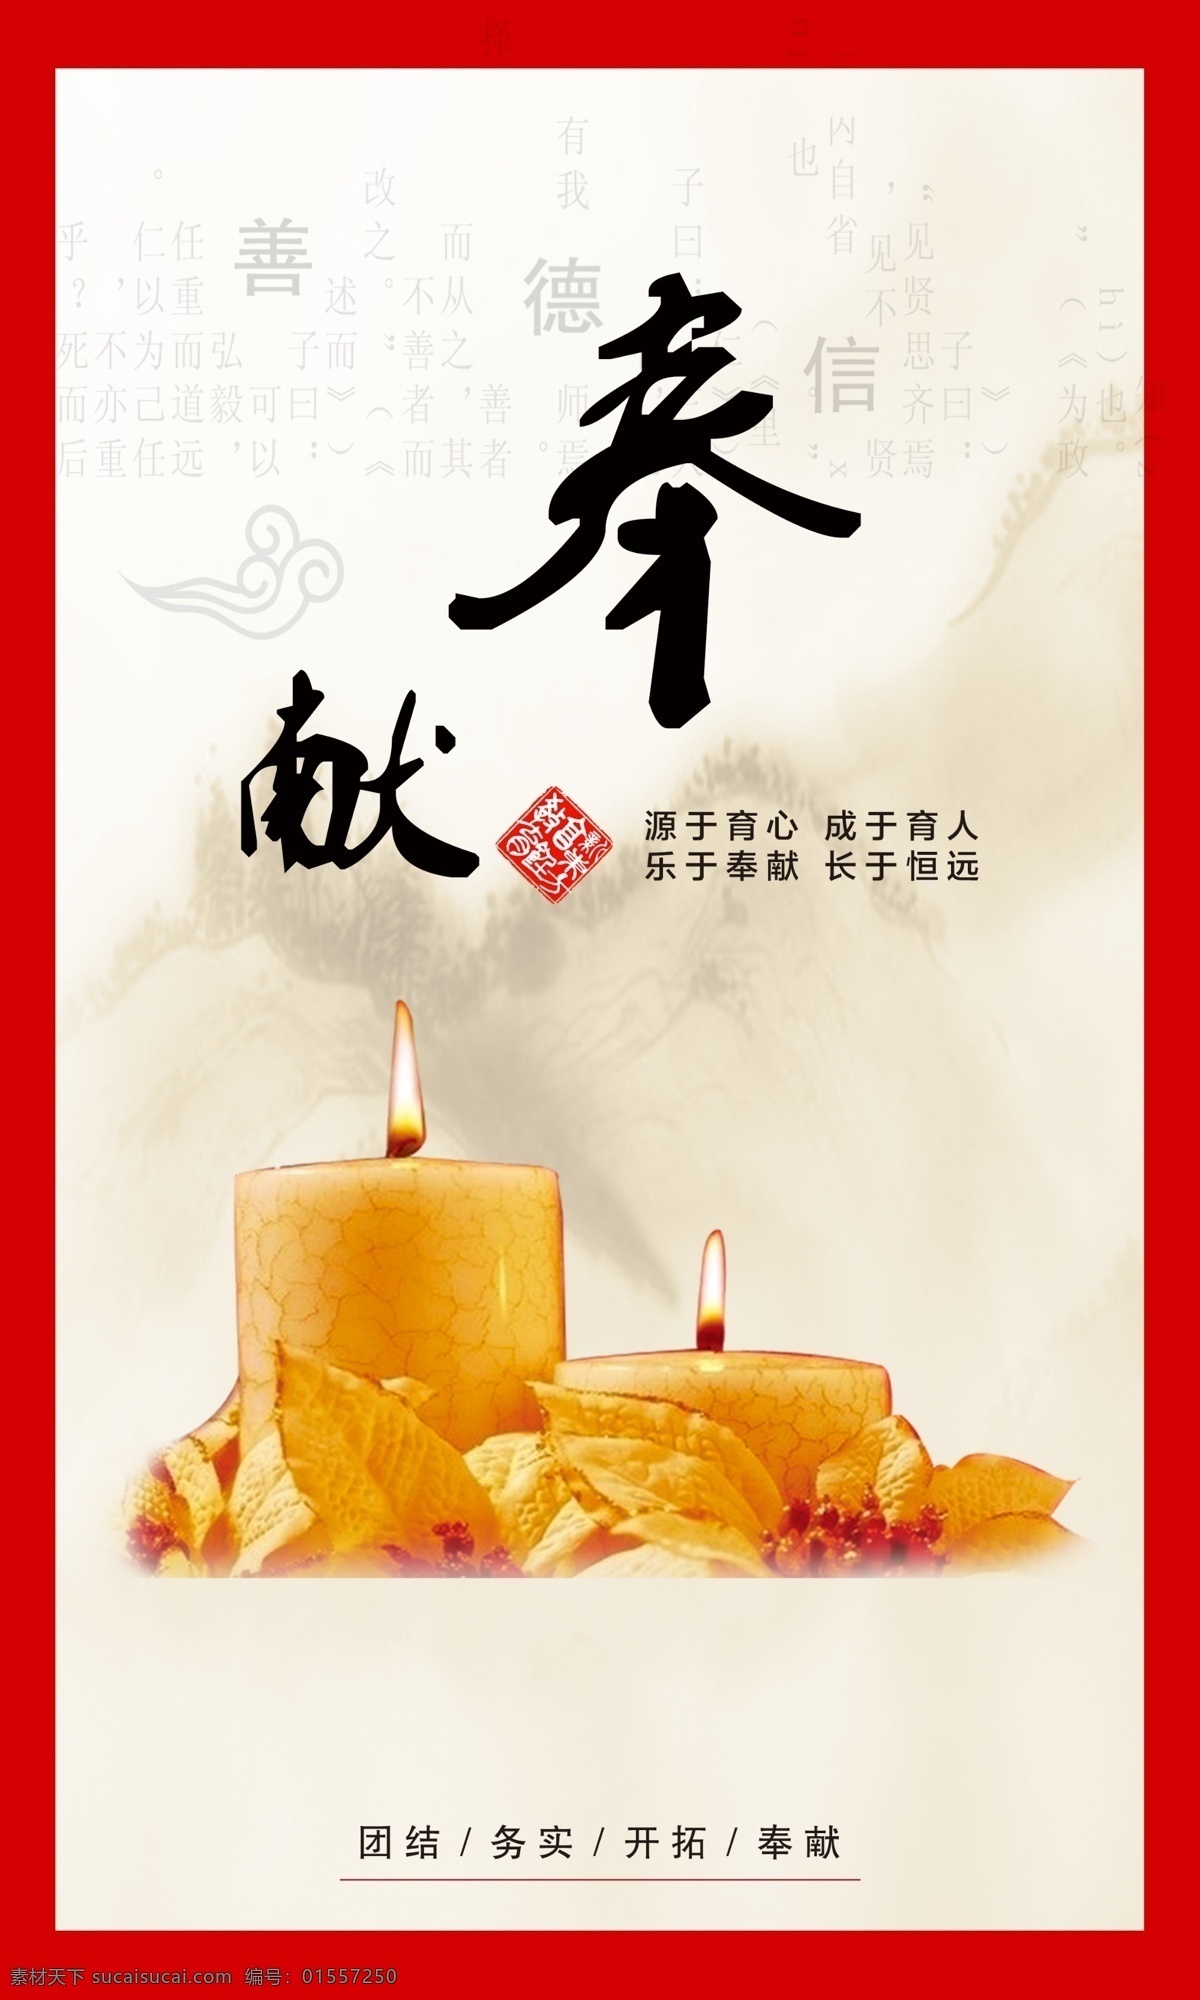 学校奉献精神 奉献 蜡烛 团结 务实 开拓 中国风背景 燃烧的蜡烛 传统文字背景 白色